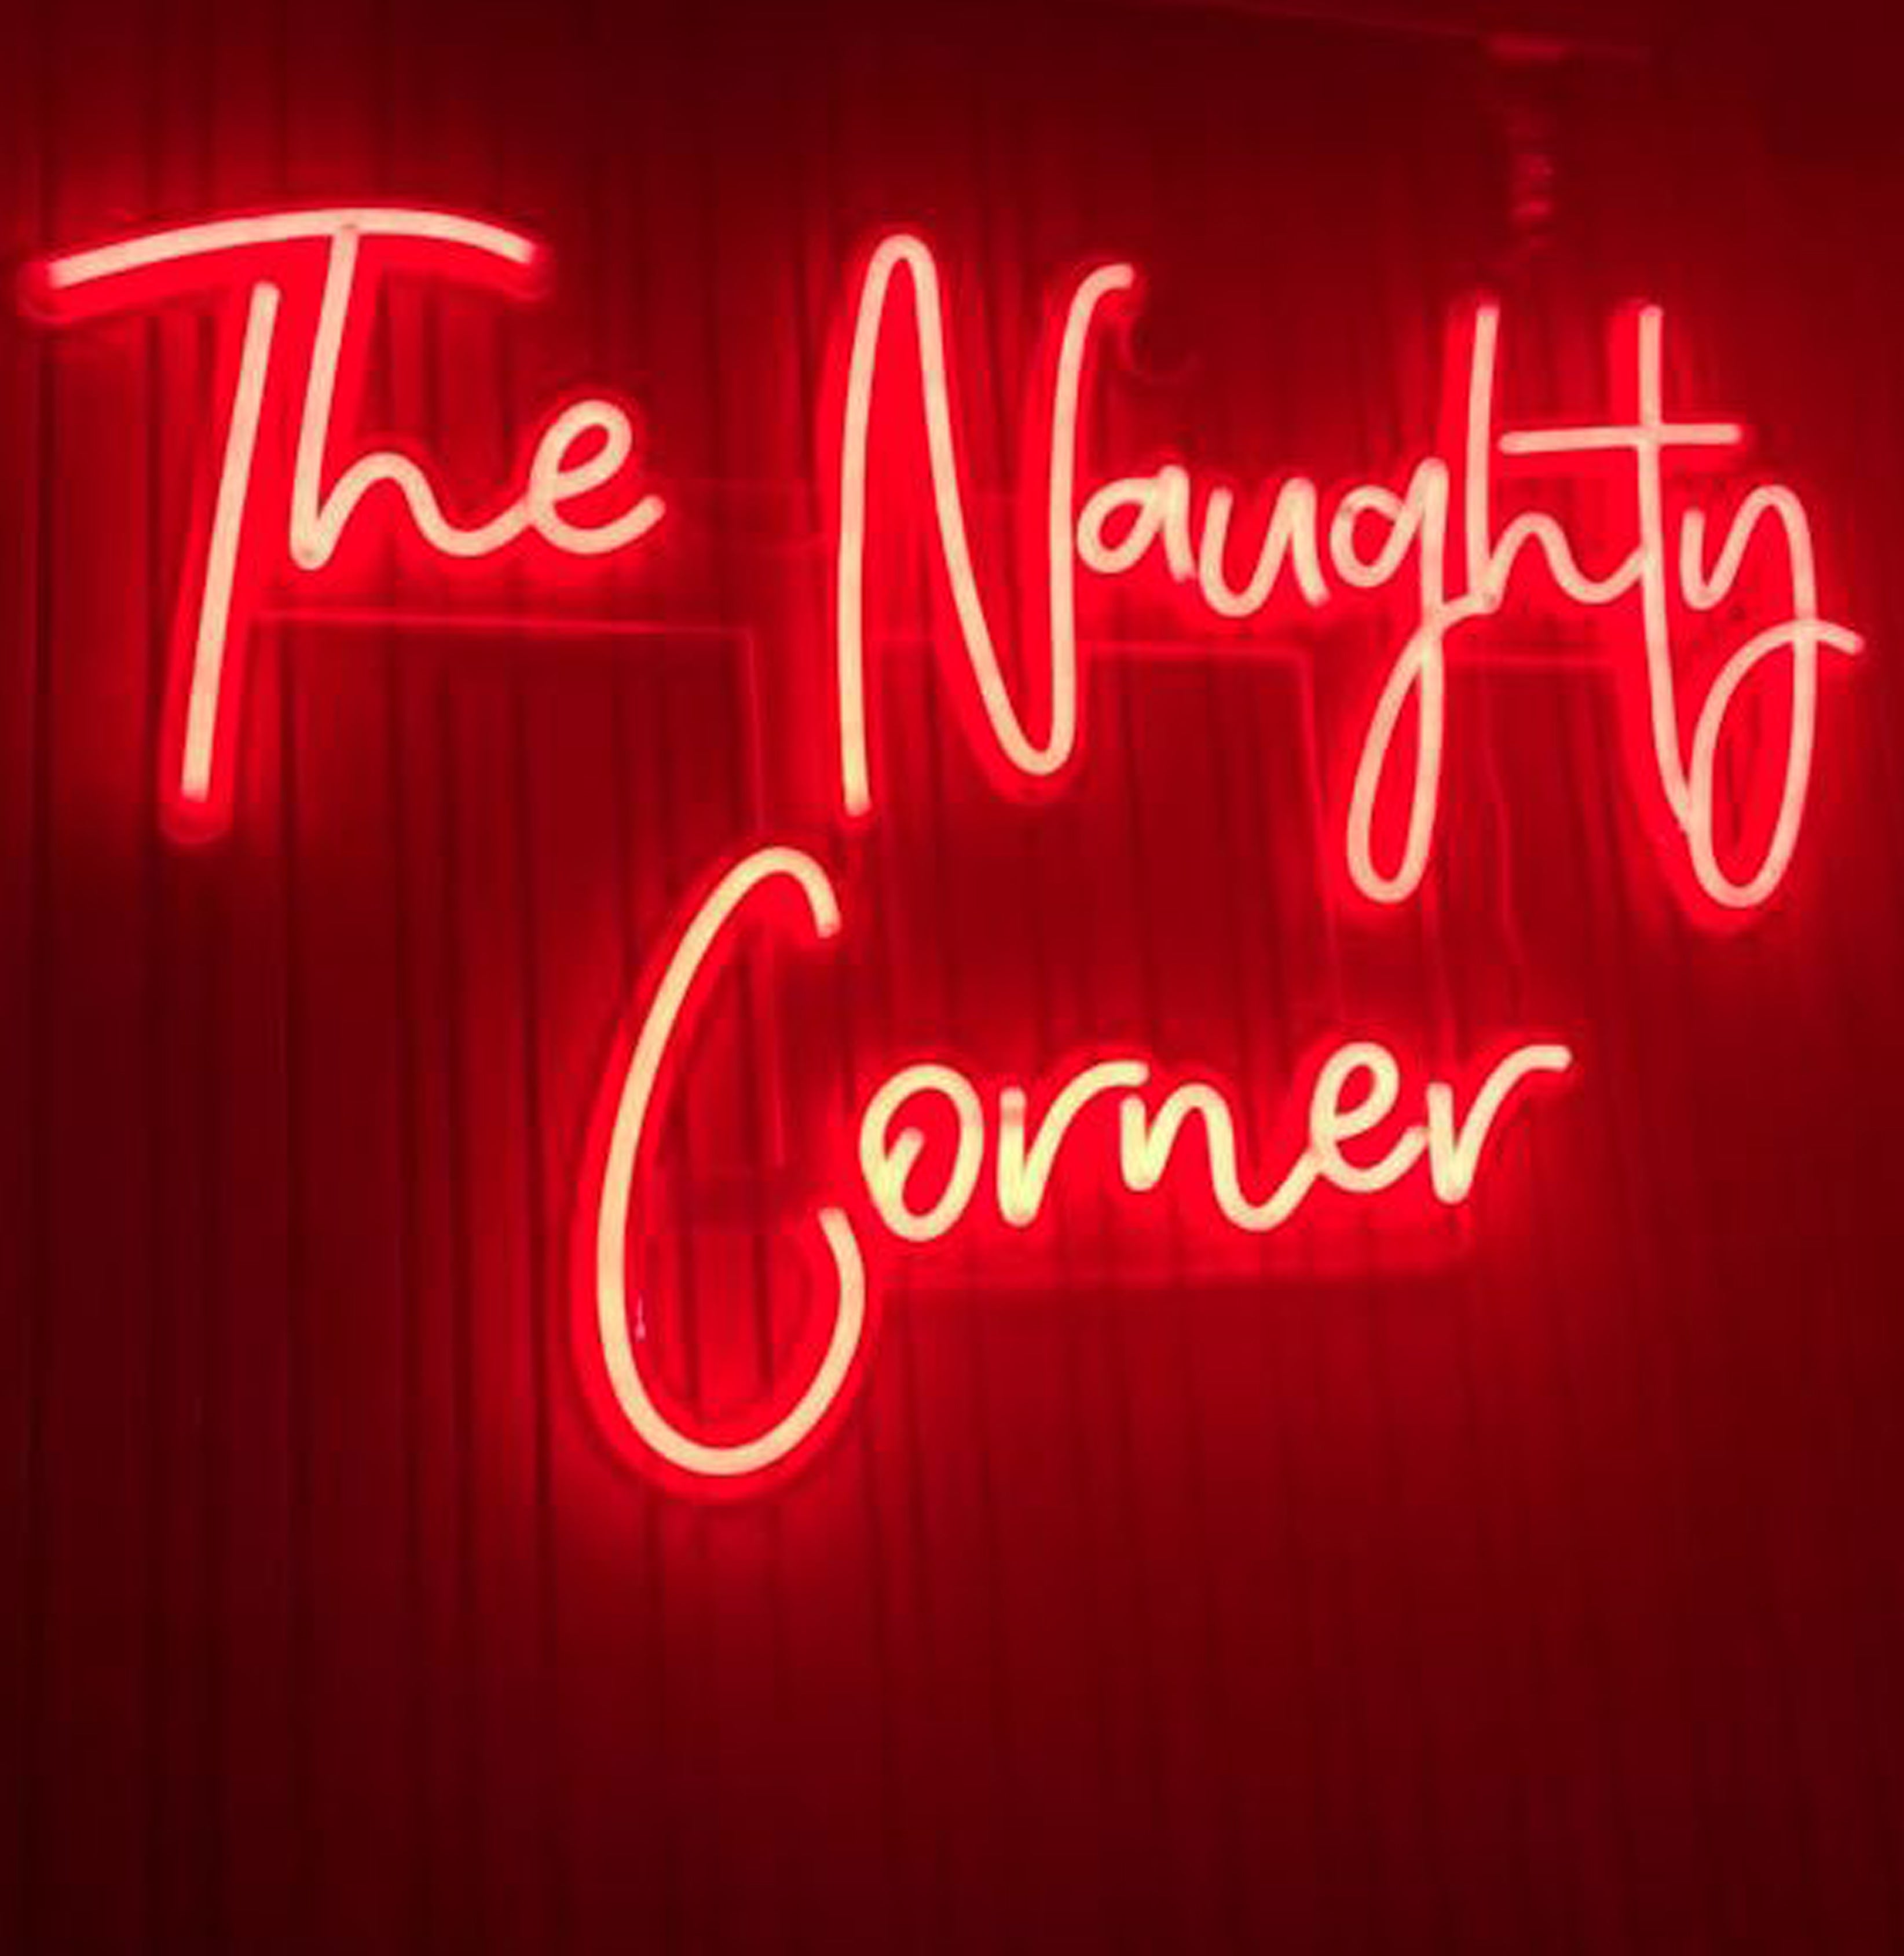 The naughty corner - Neonskilti